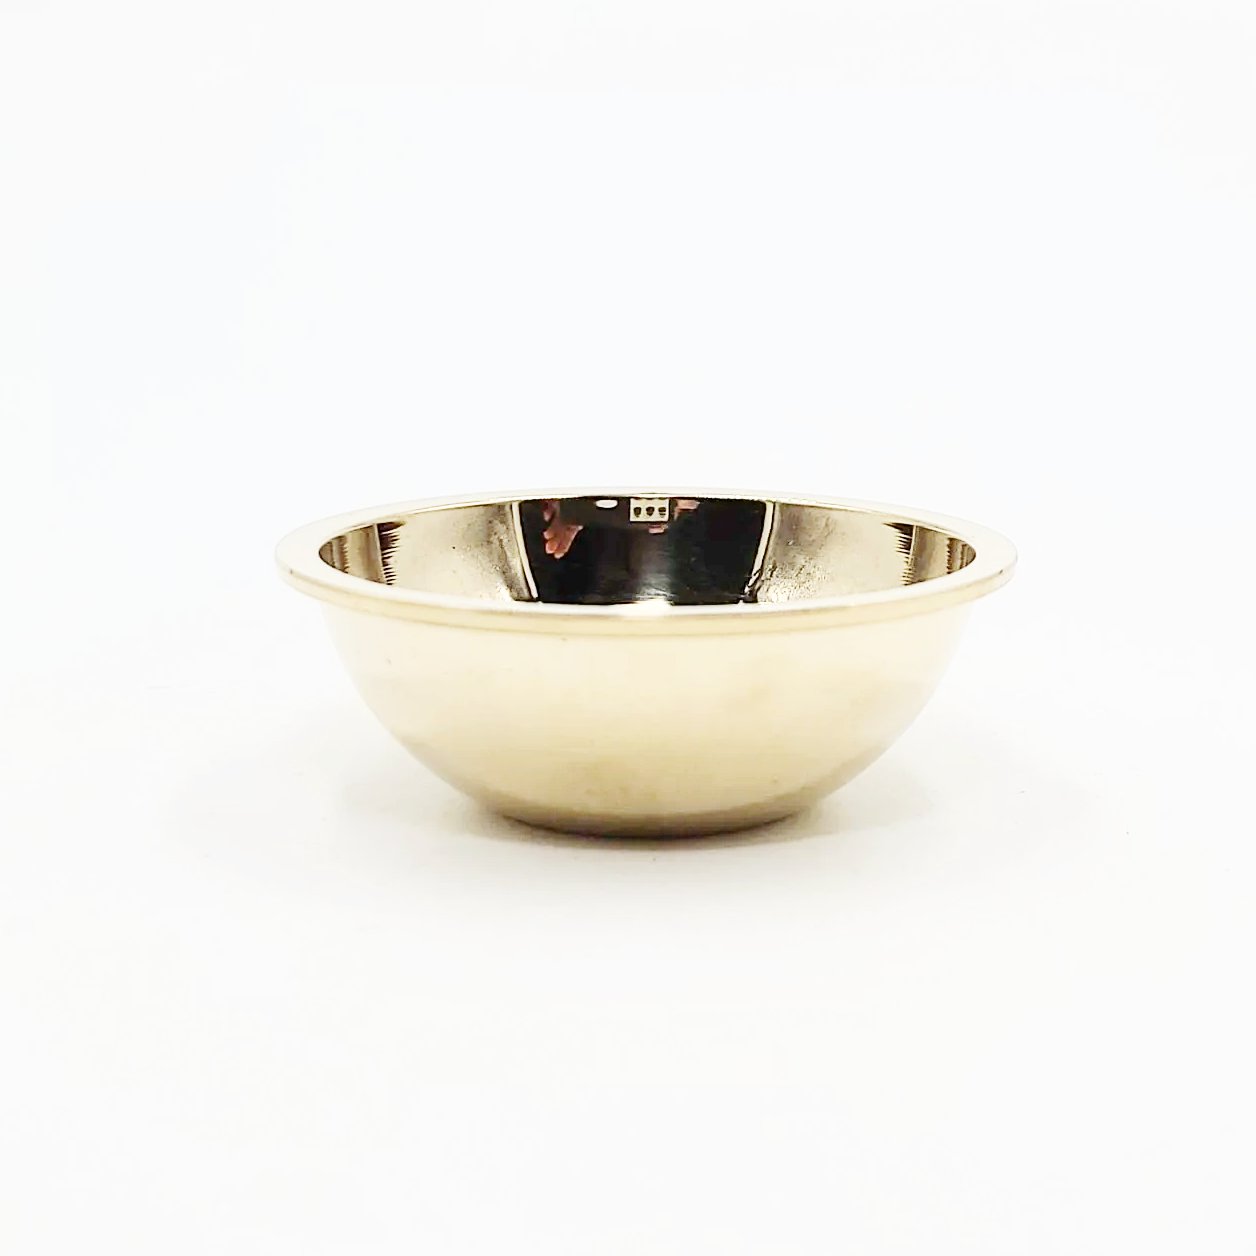 Brass Altar Bowl Incense Cone Burner Charcoal Burner 2" - Elevated Metaphysical